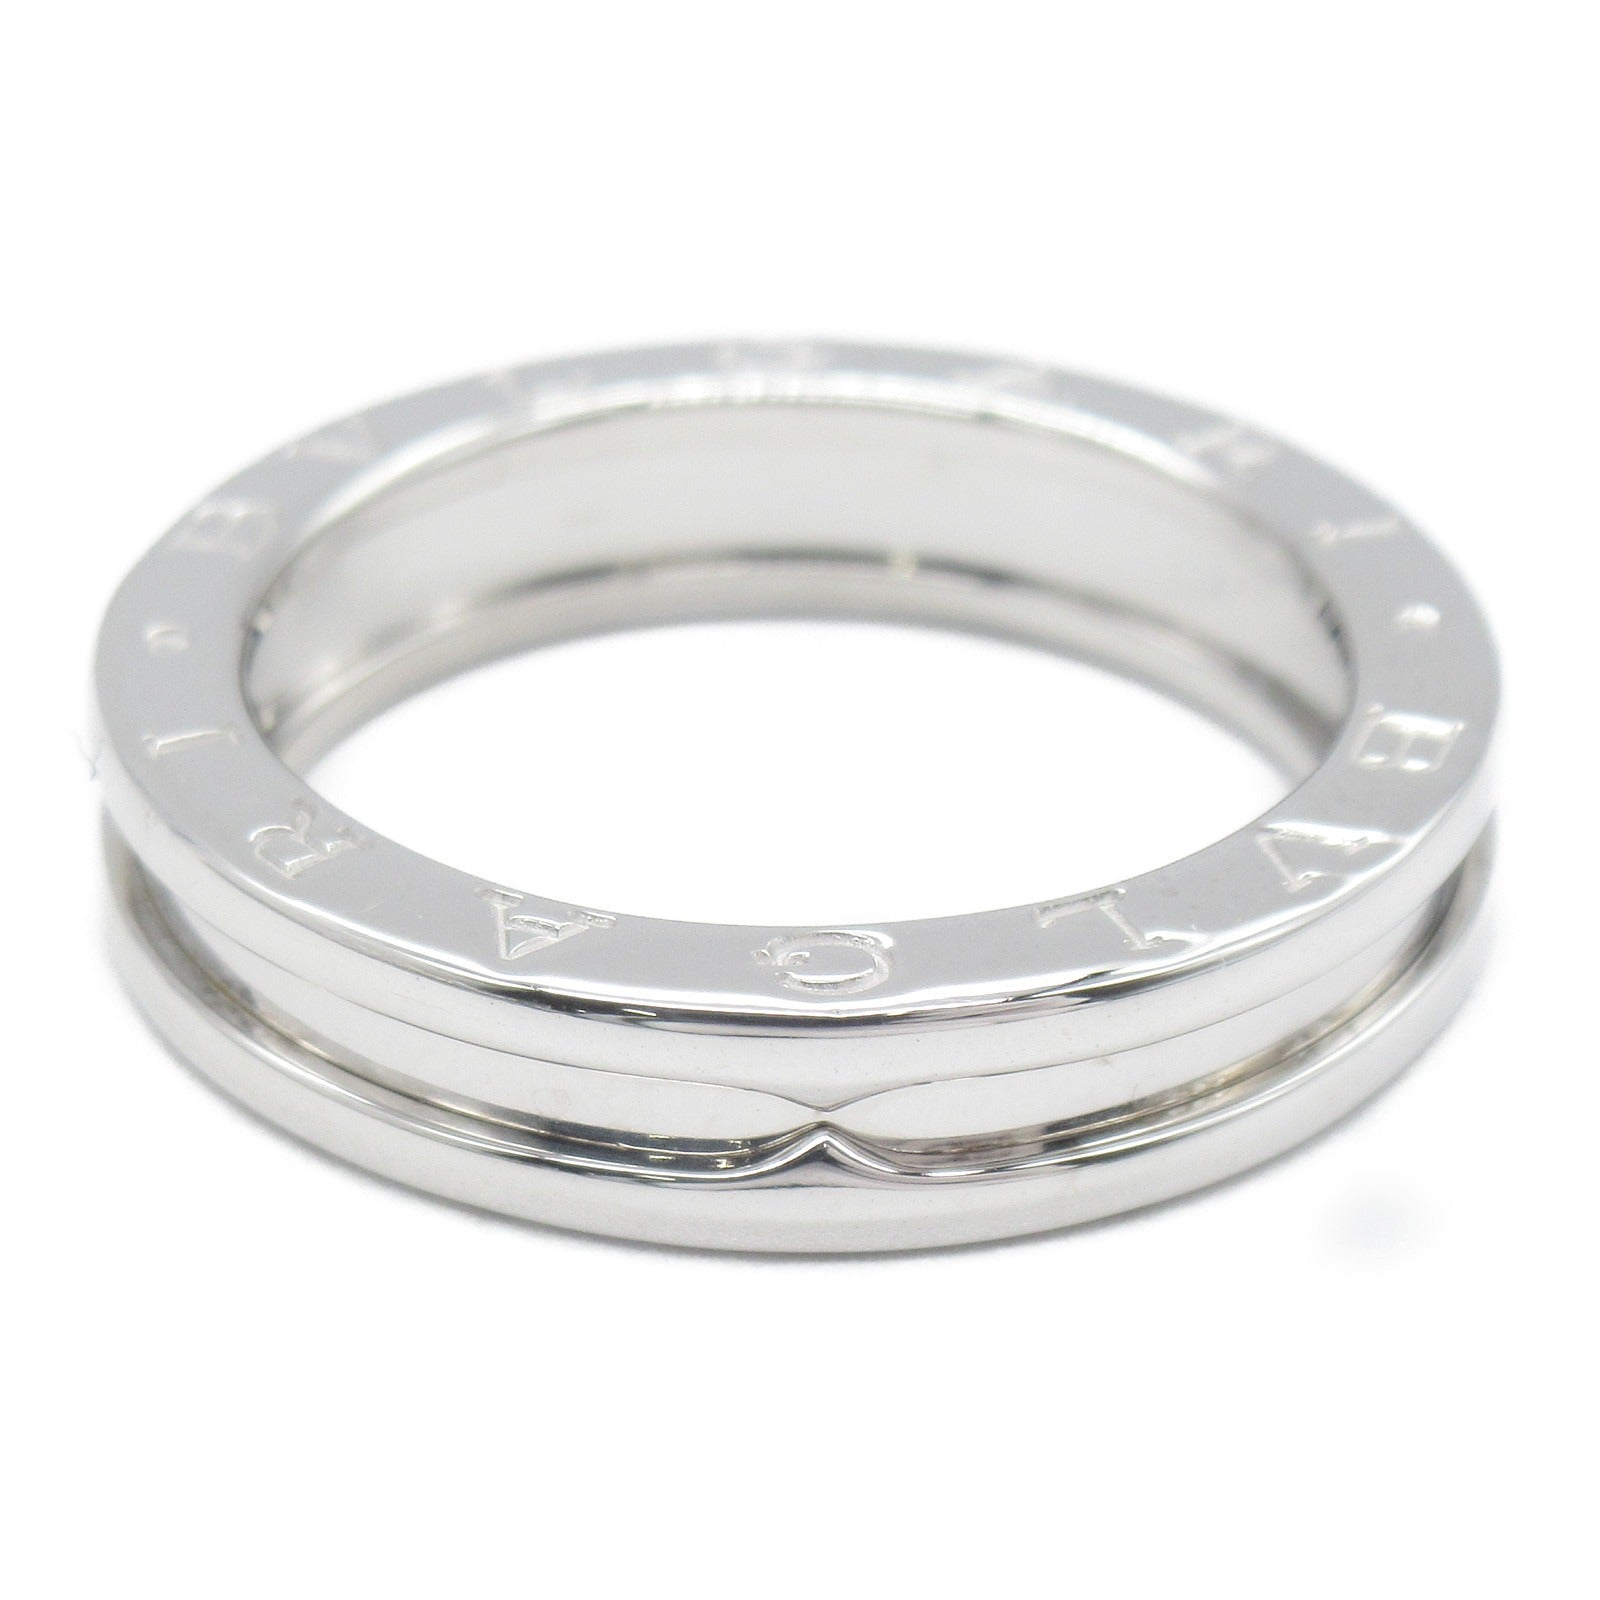 Bulgari BVLGARI B-zero1 Beezero One Ring 1 Band Ring Ring Jewelry K18WG (White G)   Silver  AN852423